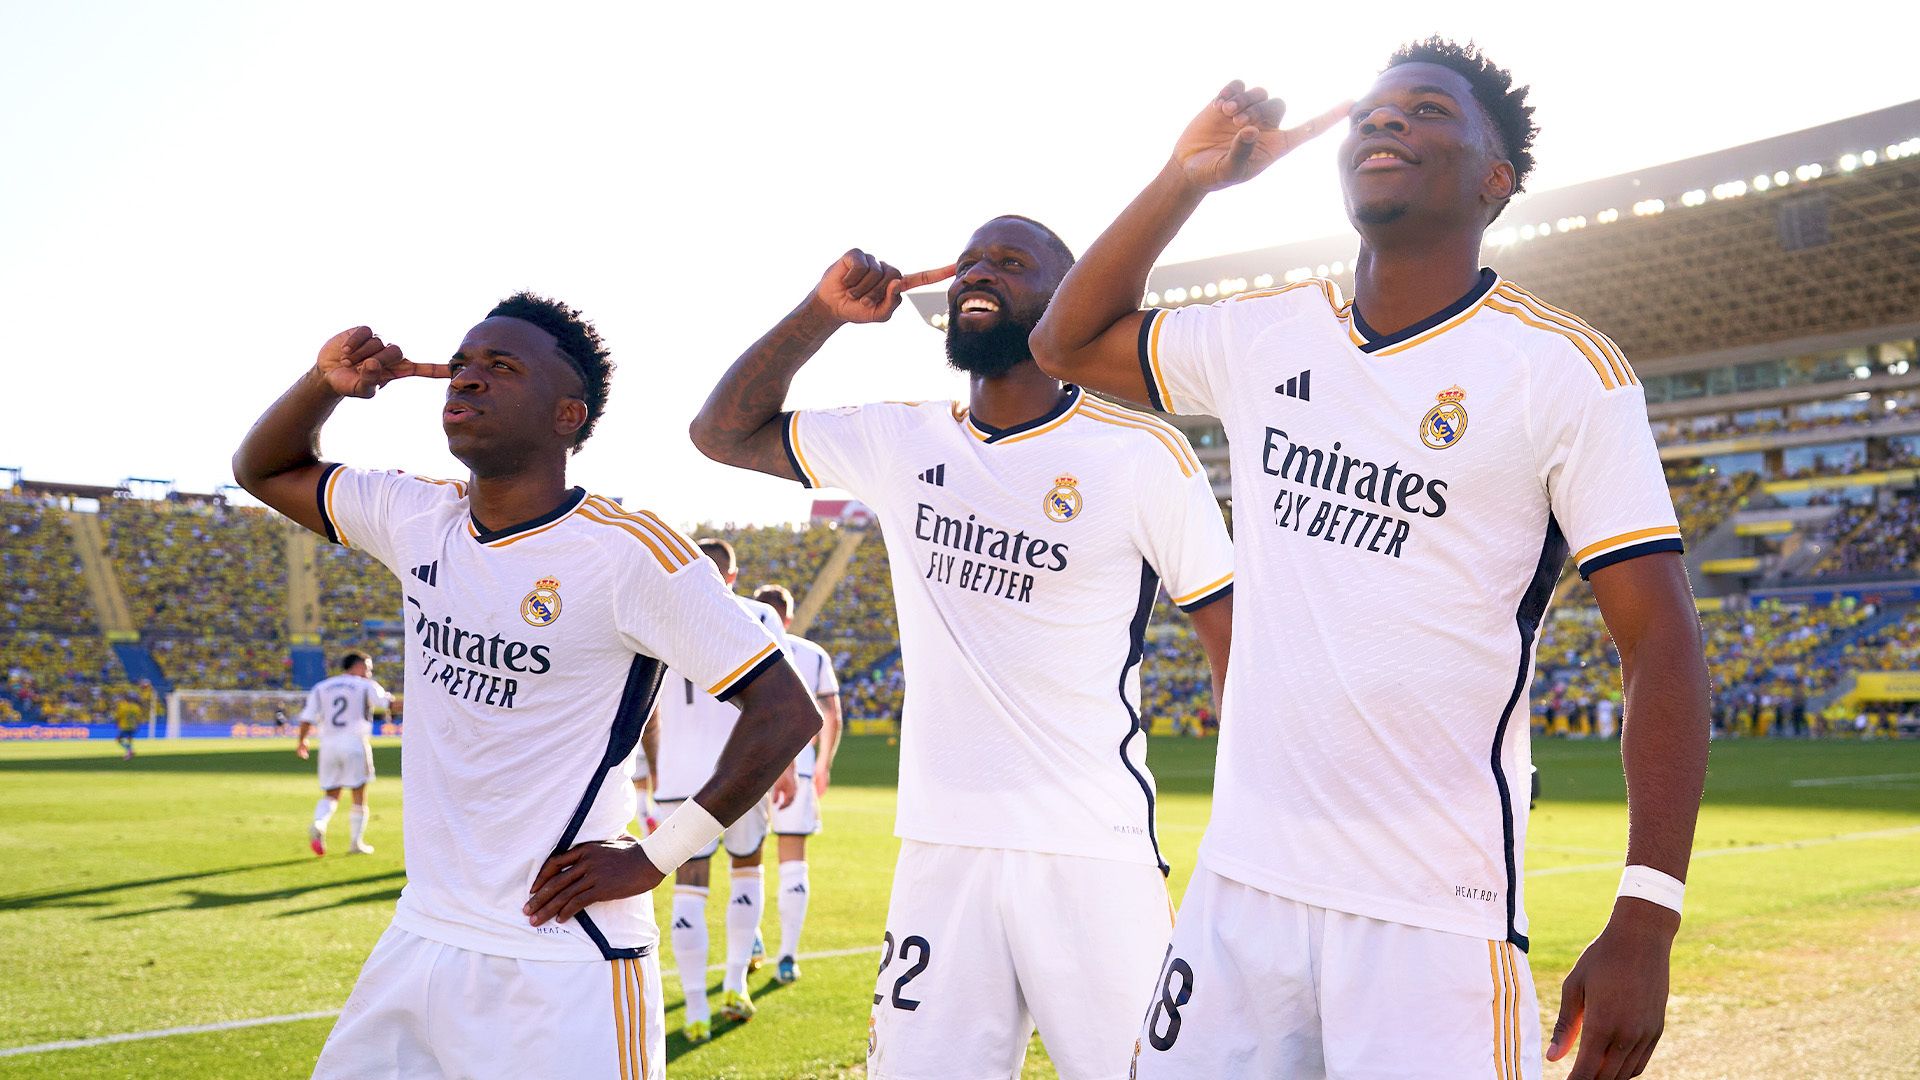 Vinicius Junior dan Aurelien Tchouameni masing-masing mencetak 1 gol dalam kemenangan Madrid 2-1 dari Las Palmas.